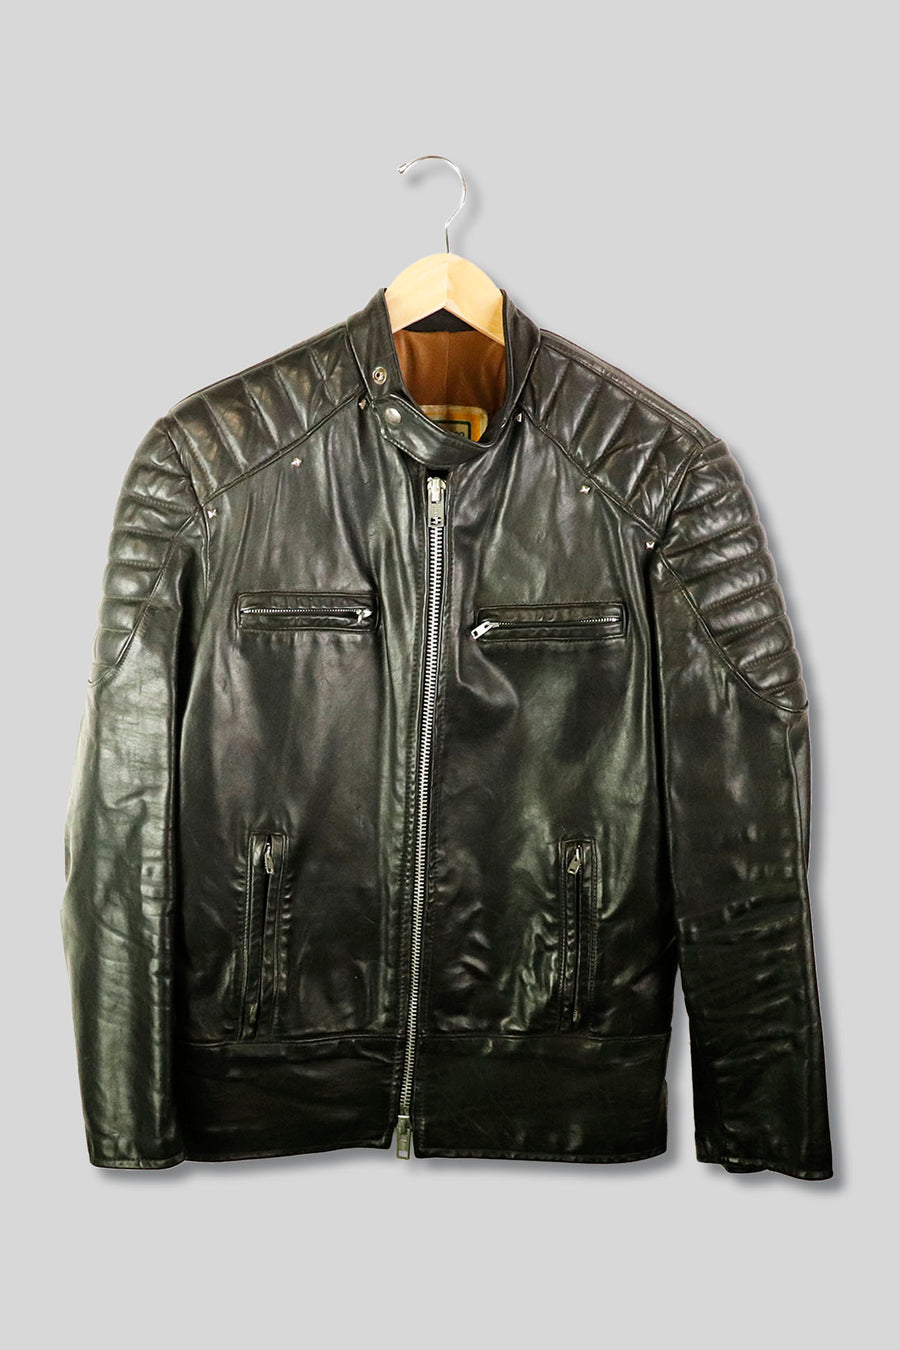 Vintage Brimaco Zip up Leather Motorcycle Jacket